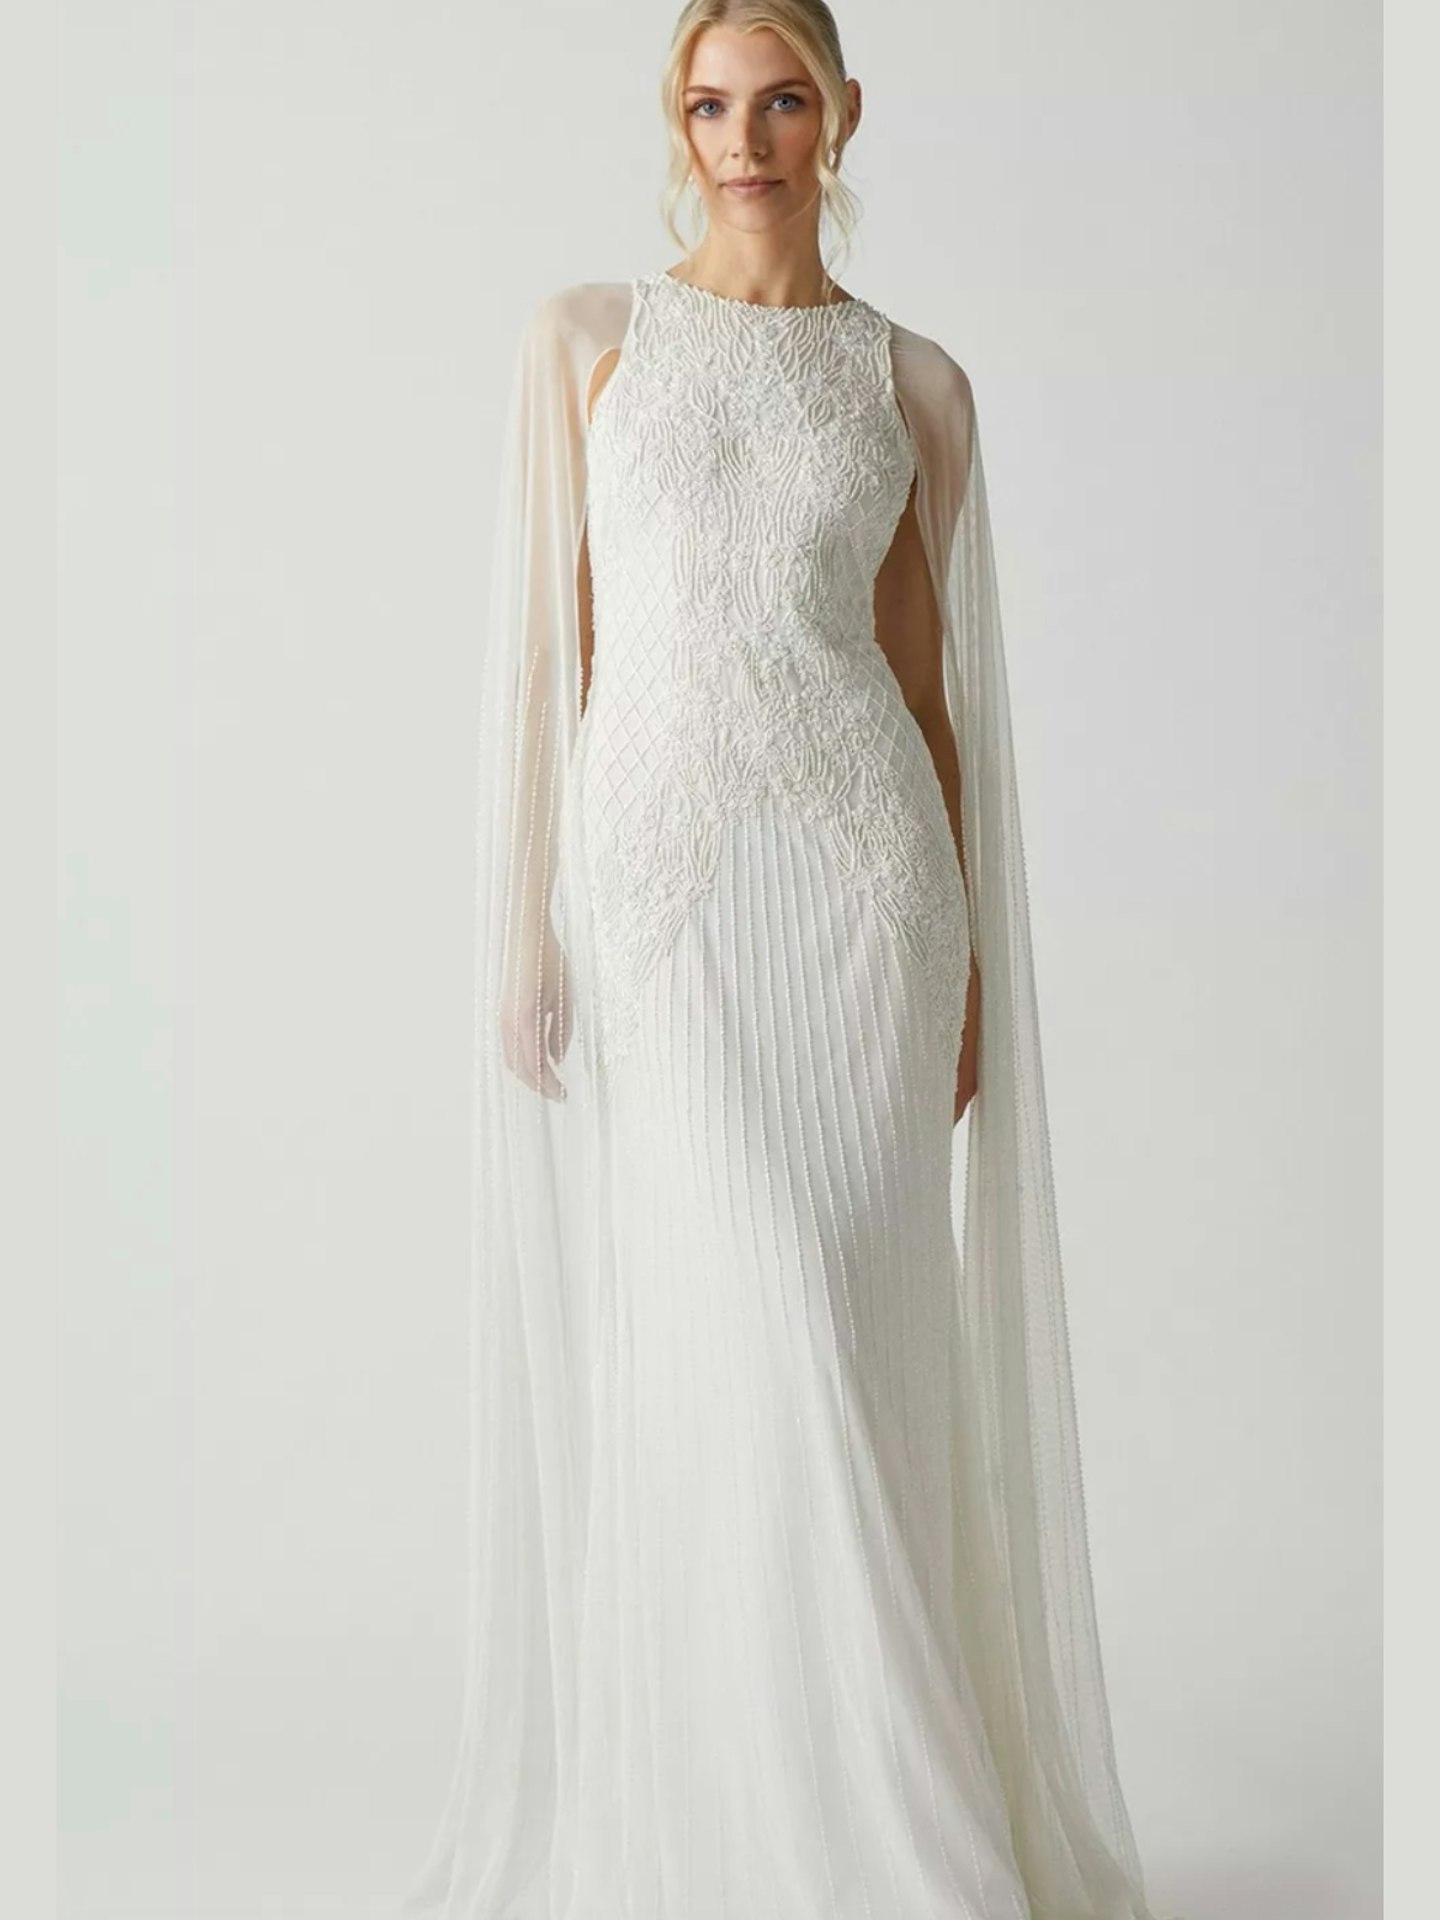 Coast Premium Embellished Wedding Dress With Cape Sleeves